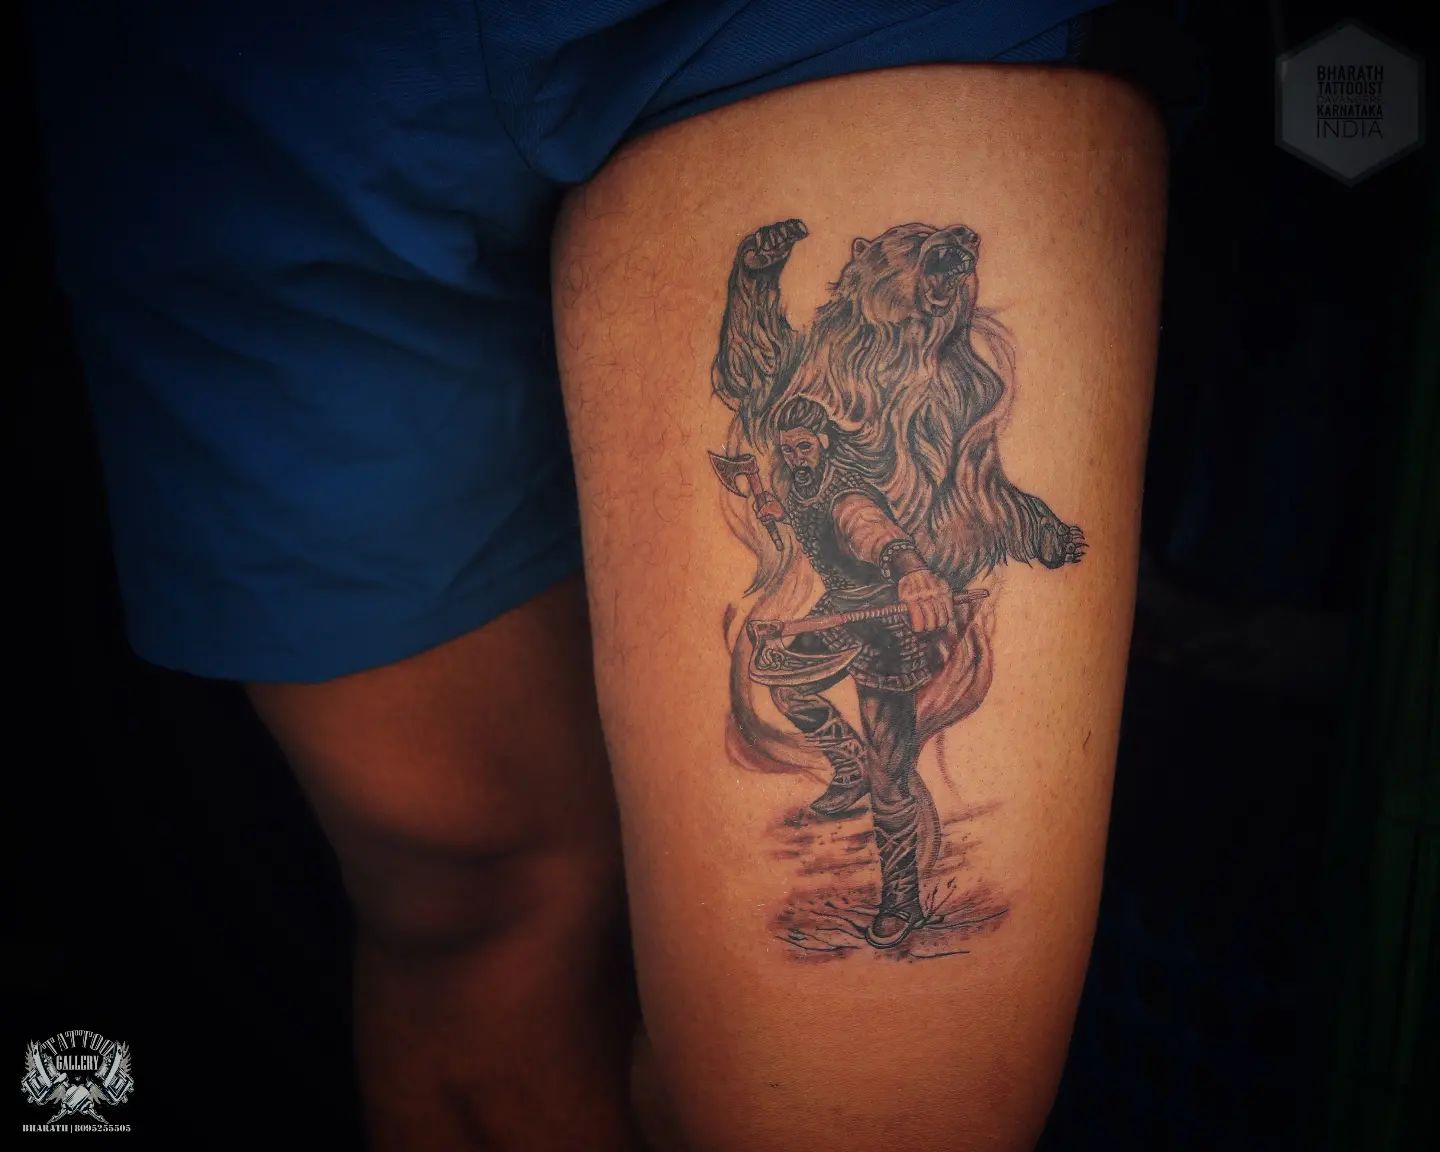 Tatuaje de guerrero vikingo en el muslo.